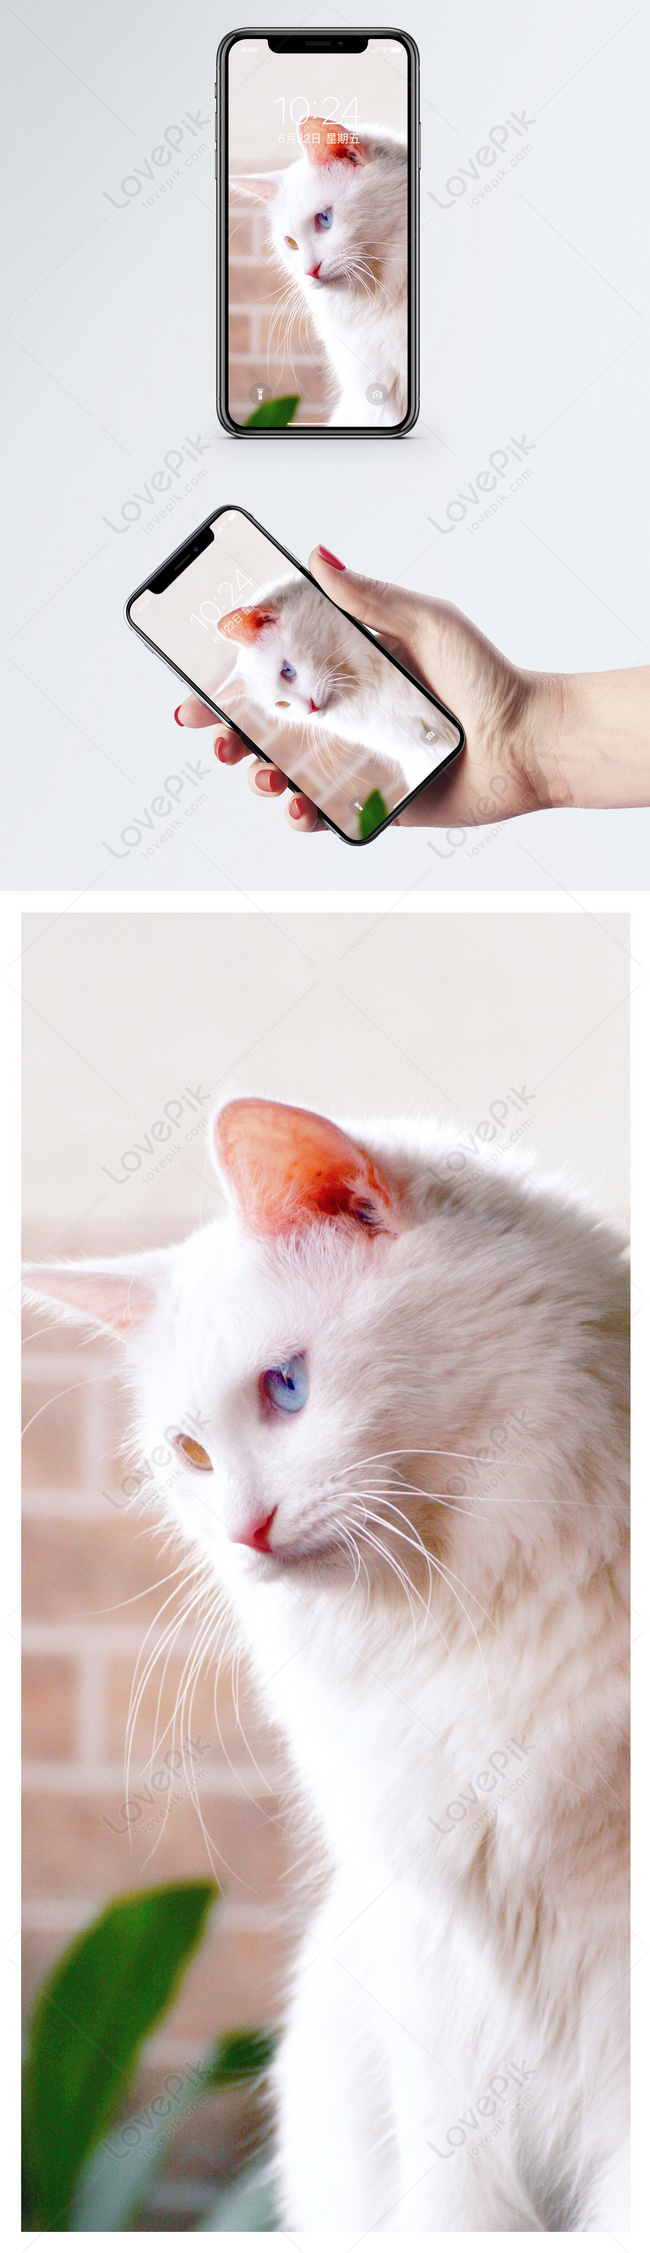 Mèo hình nền : Sự dễ thương và lựa chọn tuyệt vời cho màn hình điện thoại  của bạn